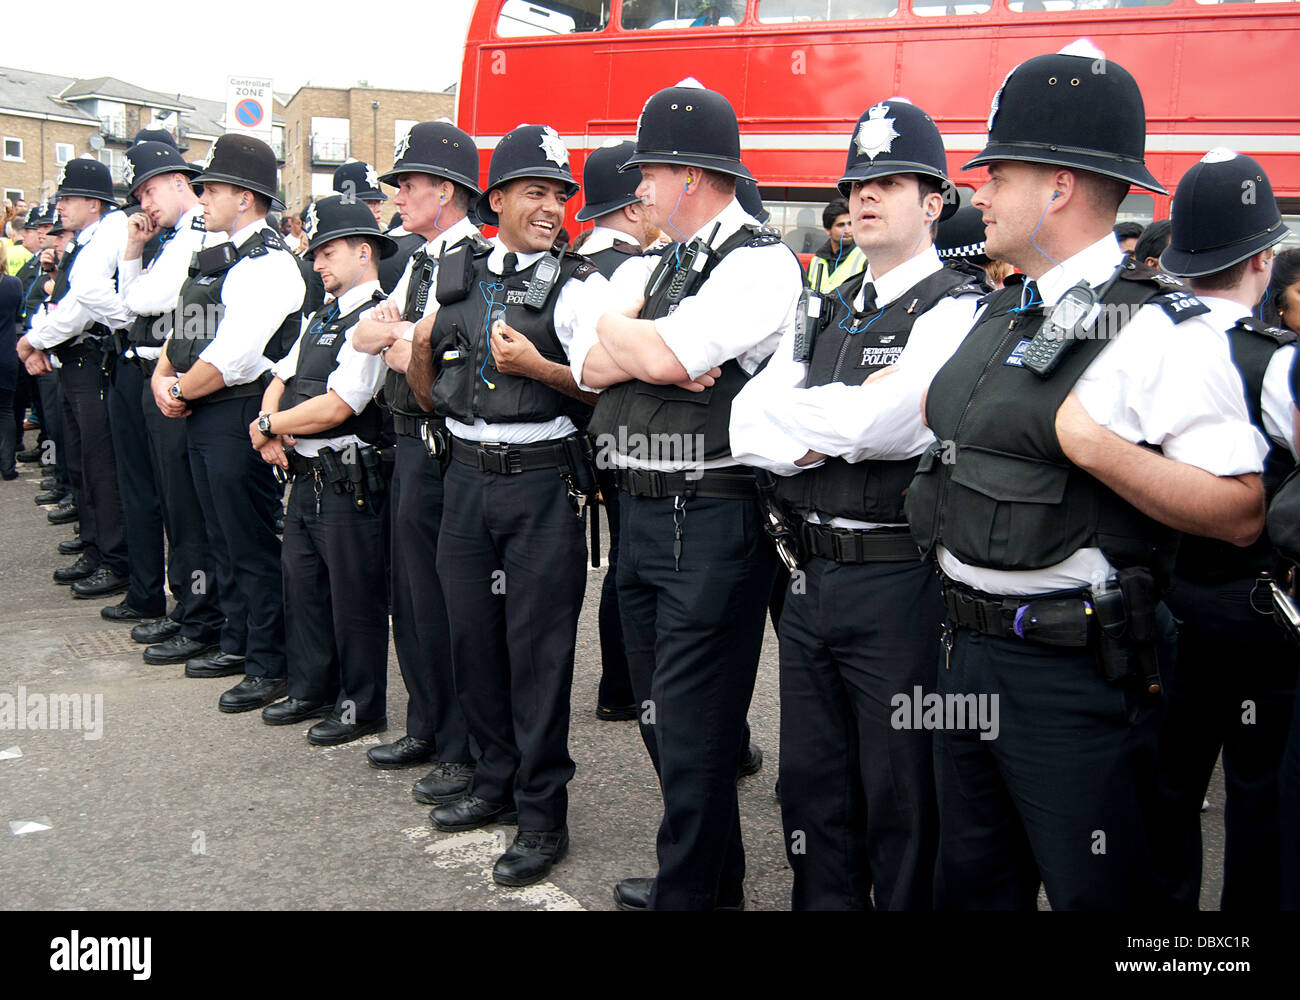 Londra, Inghilterra - Agosto 29, 2011 cordone di polizia a Londra Notting Hill carnevale di Agosto 29, 2011 a Londra Foto Stock